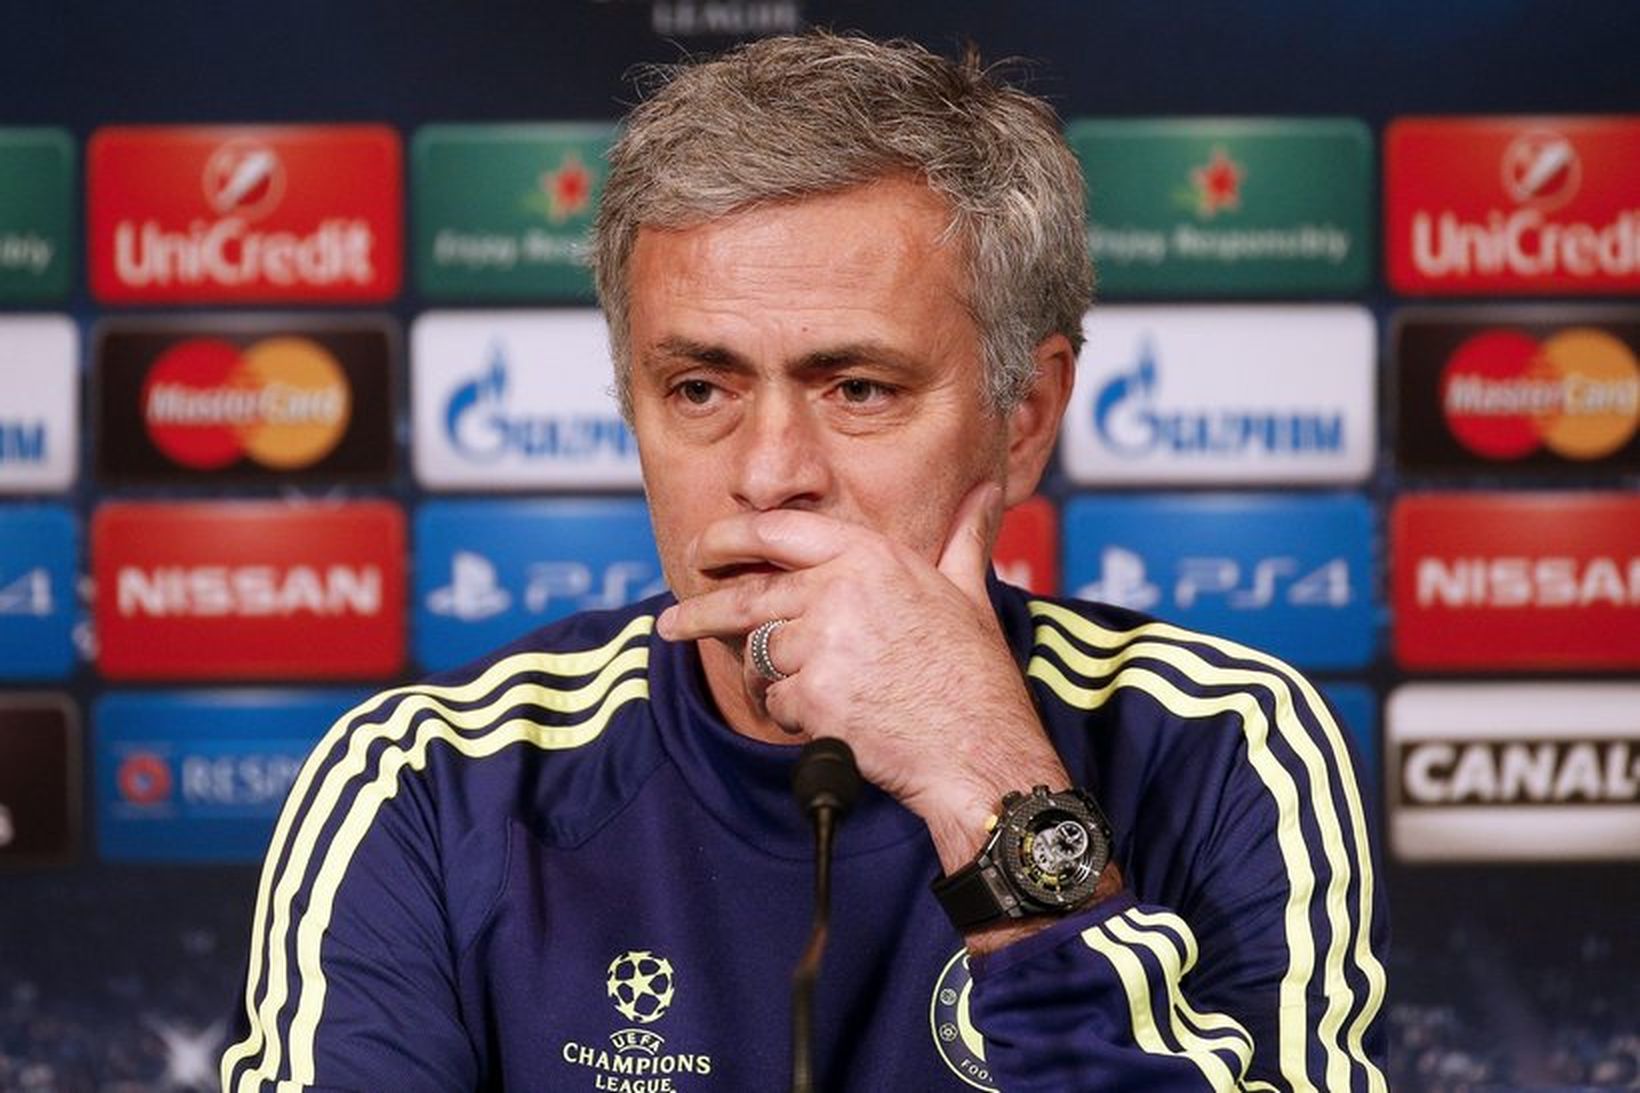 Jose Mourinho var ekkert að stressa sig fyrir komandi bikarúrslitaleik.